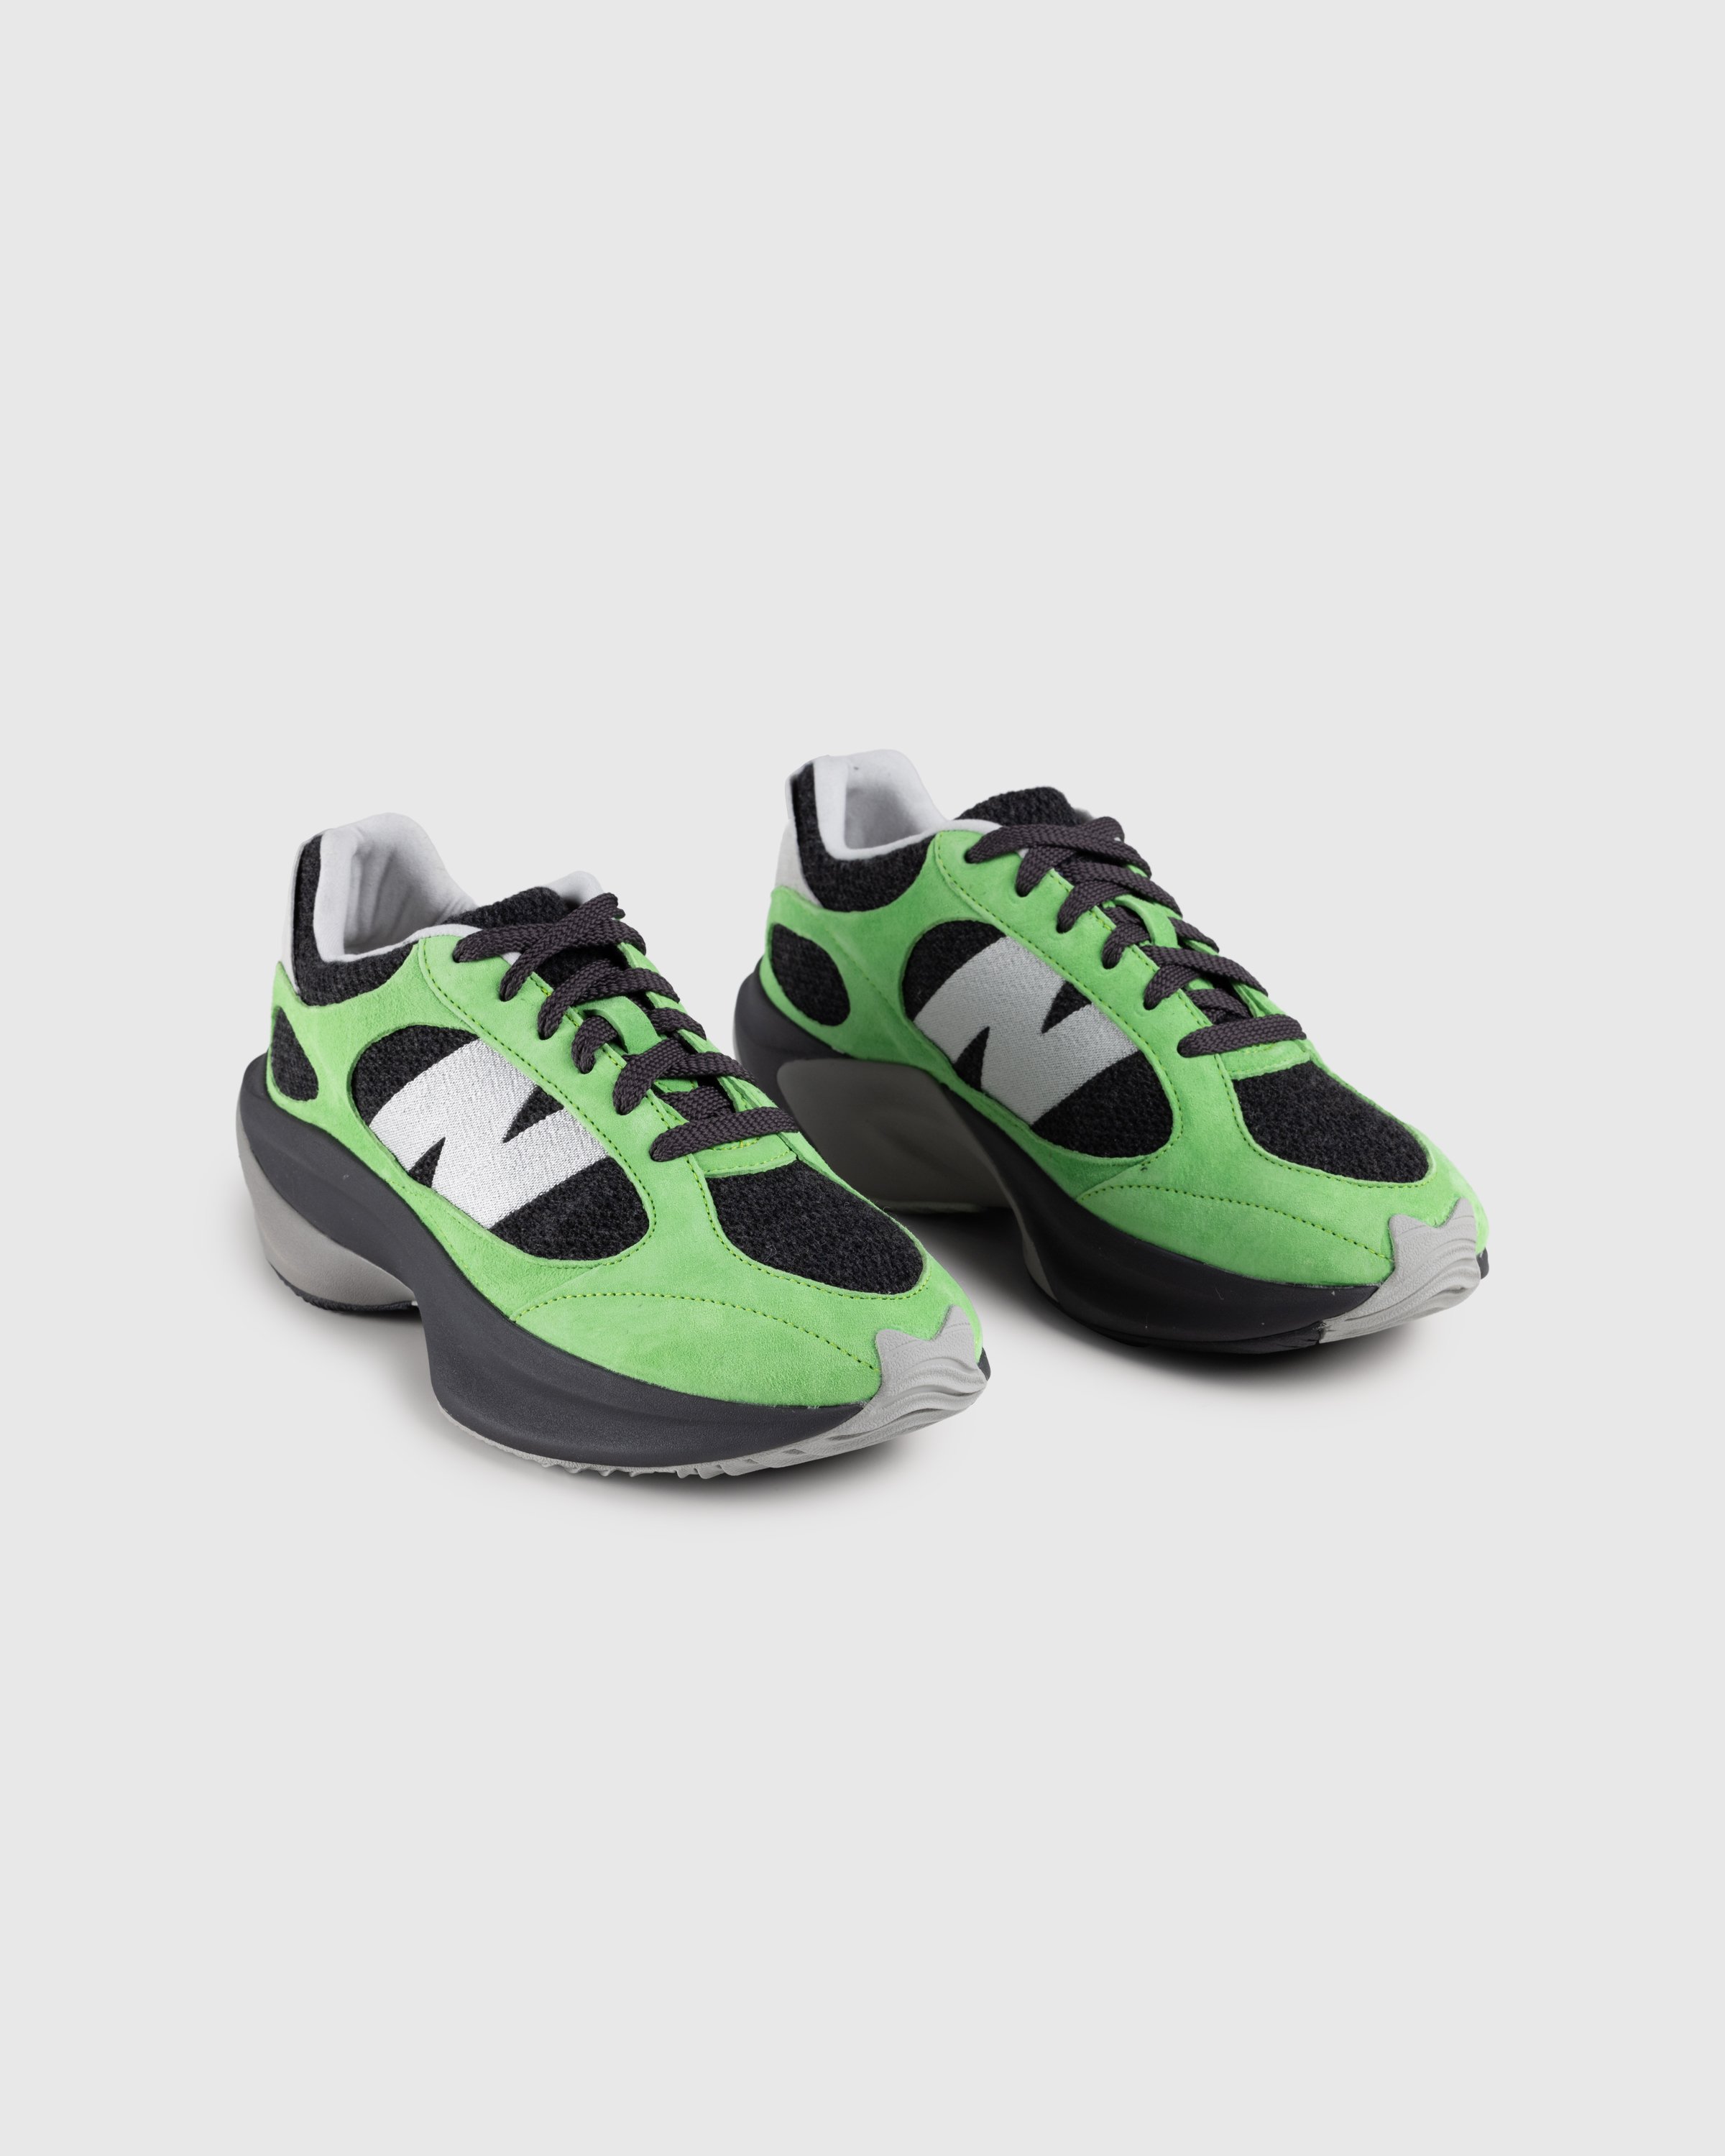 New Balance - WRPD Runner Green/Summer Fog - Footwear - Green - Image 3